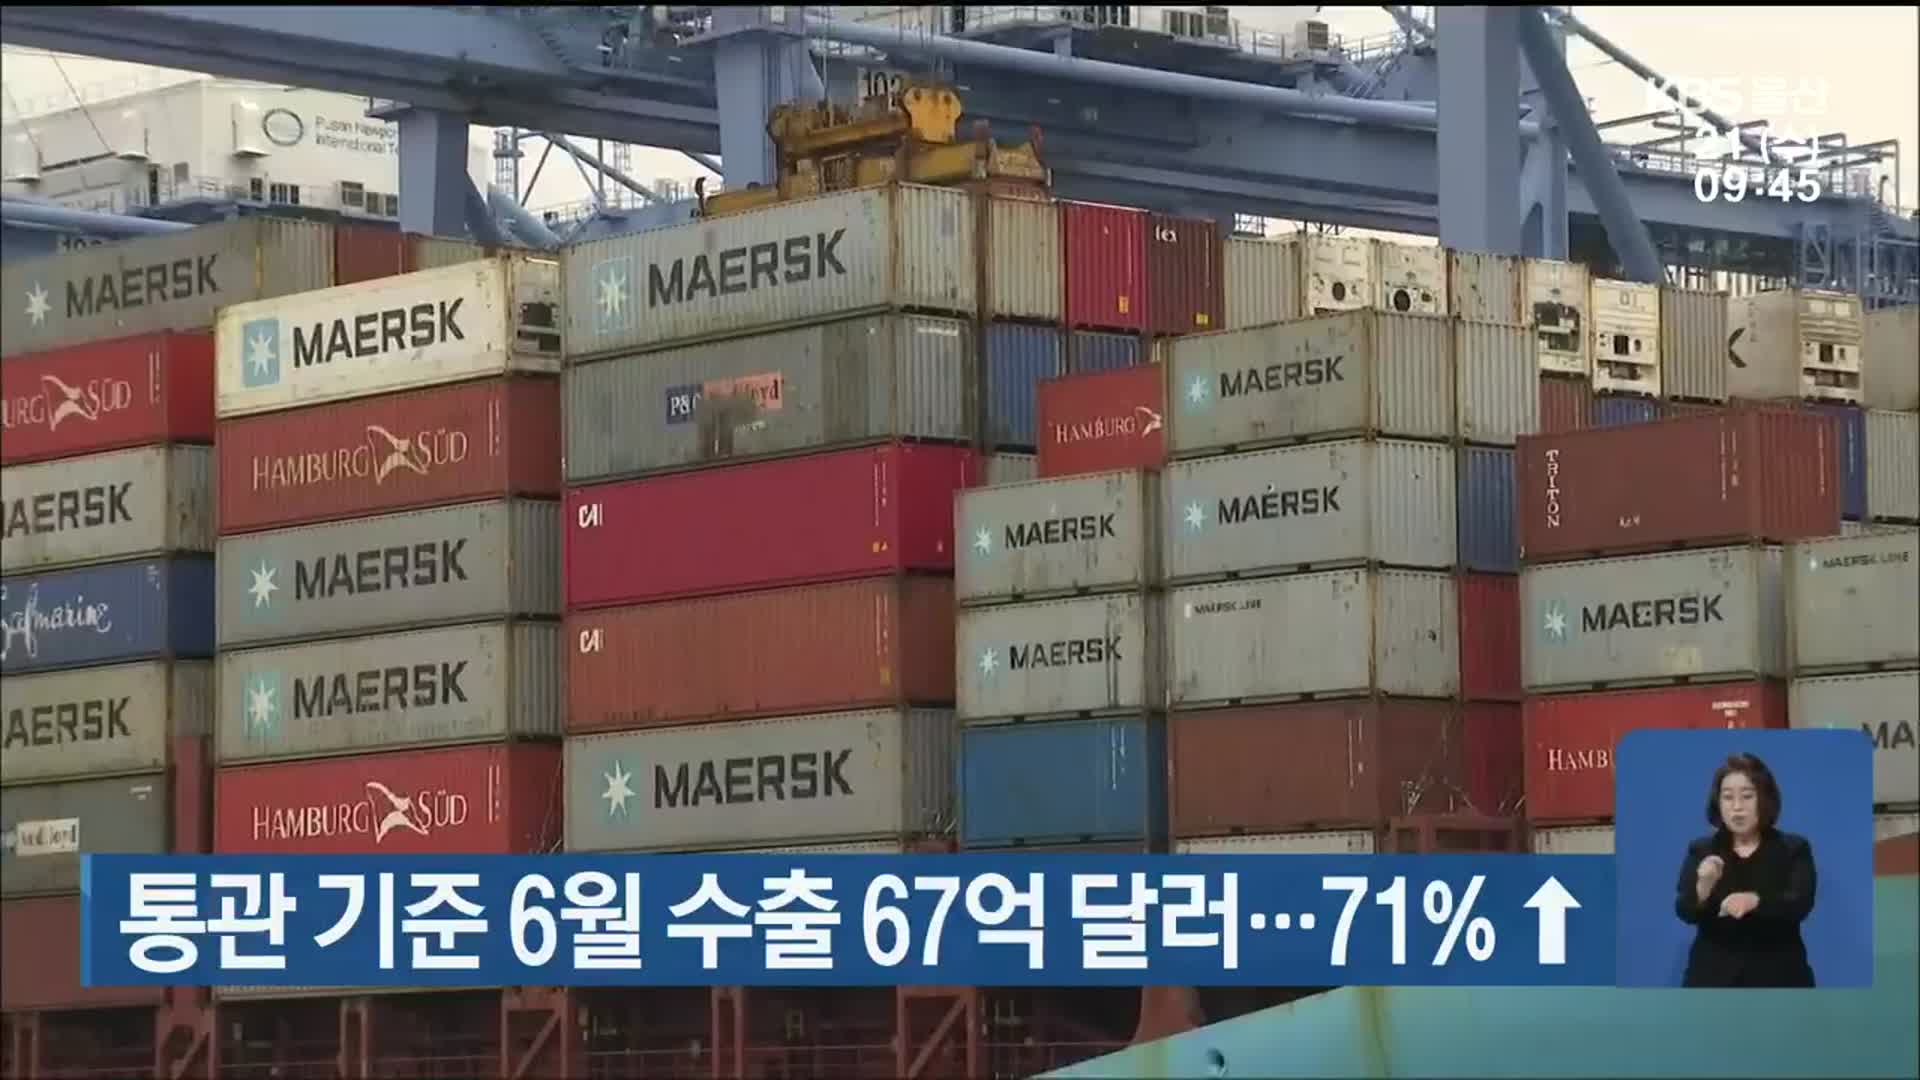 울산 통관 기준 6월 수출 67억 달러…71%↑